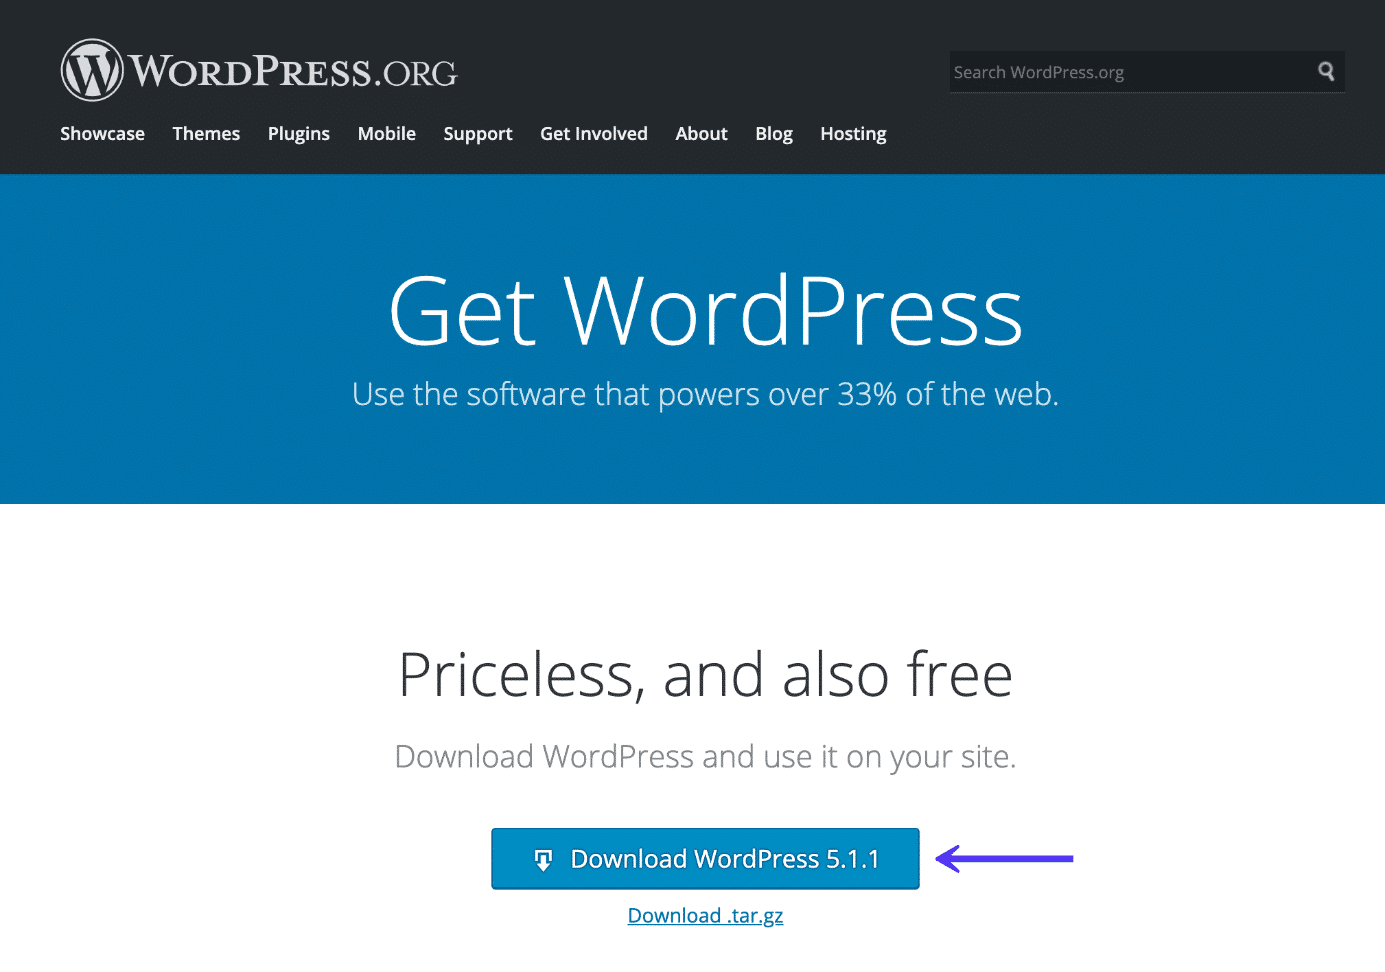 Scarica la copia più recente di WordPress